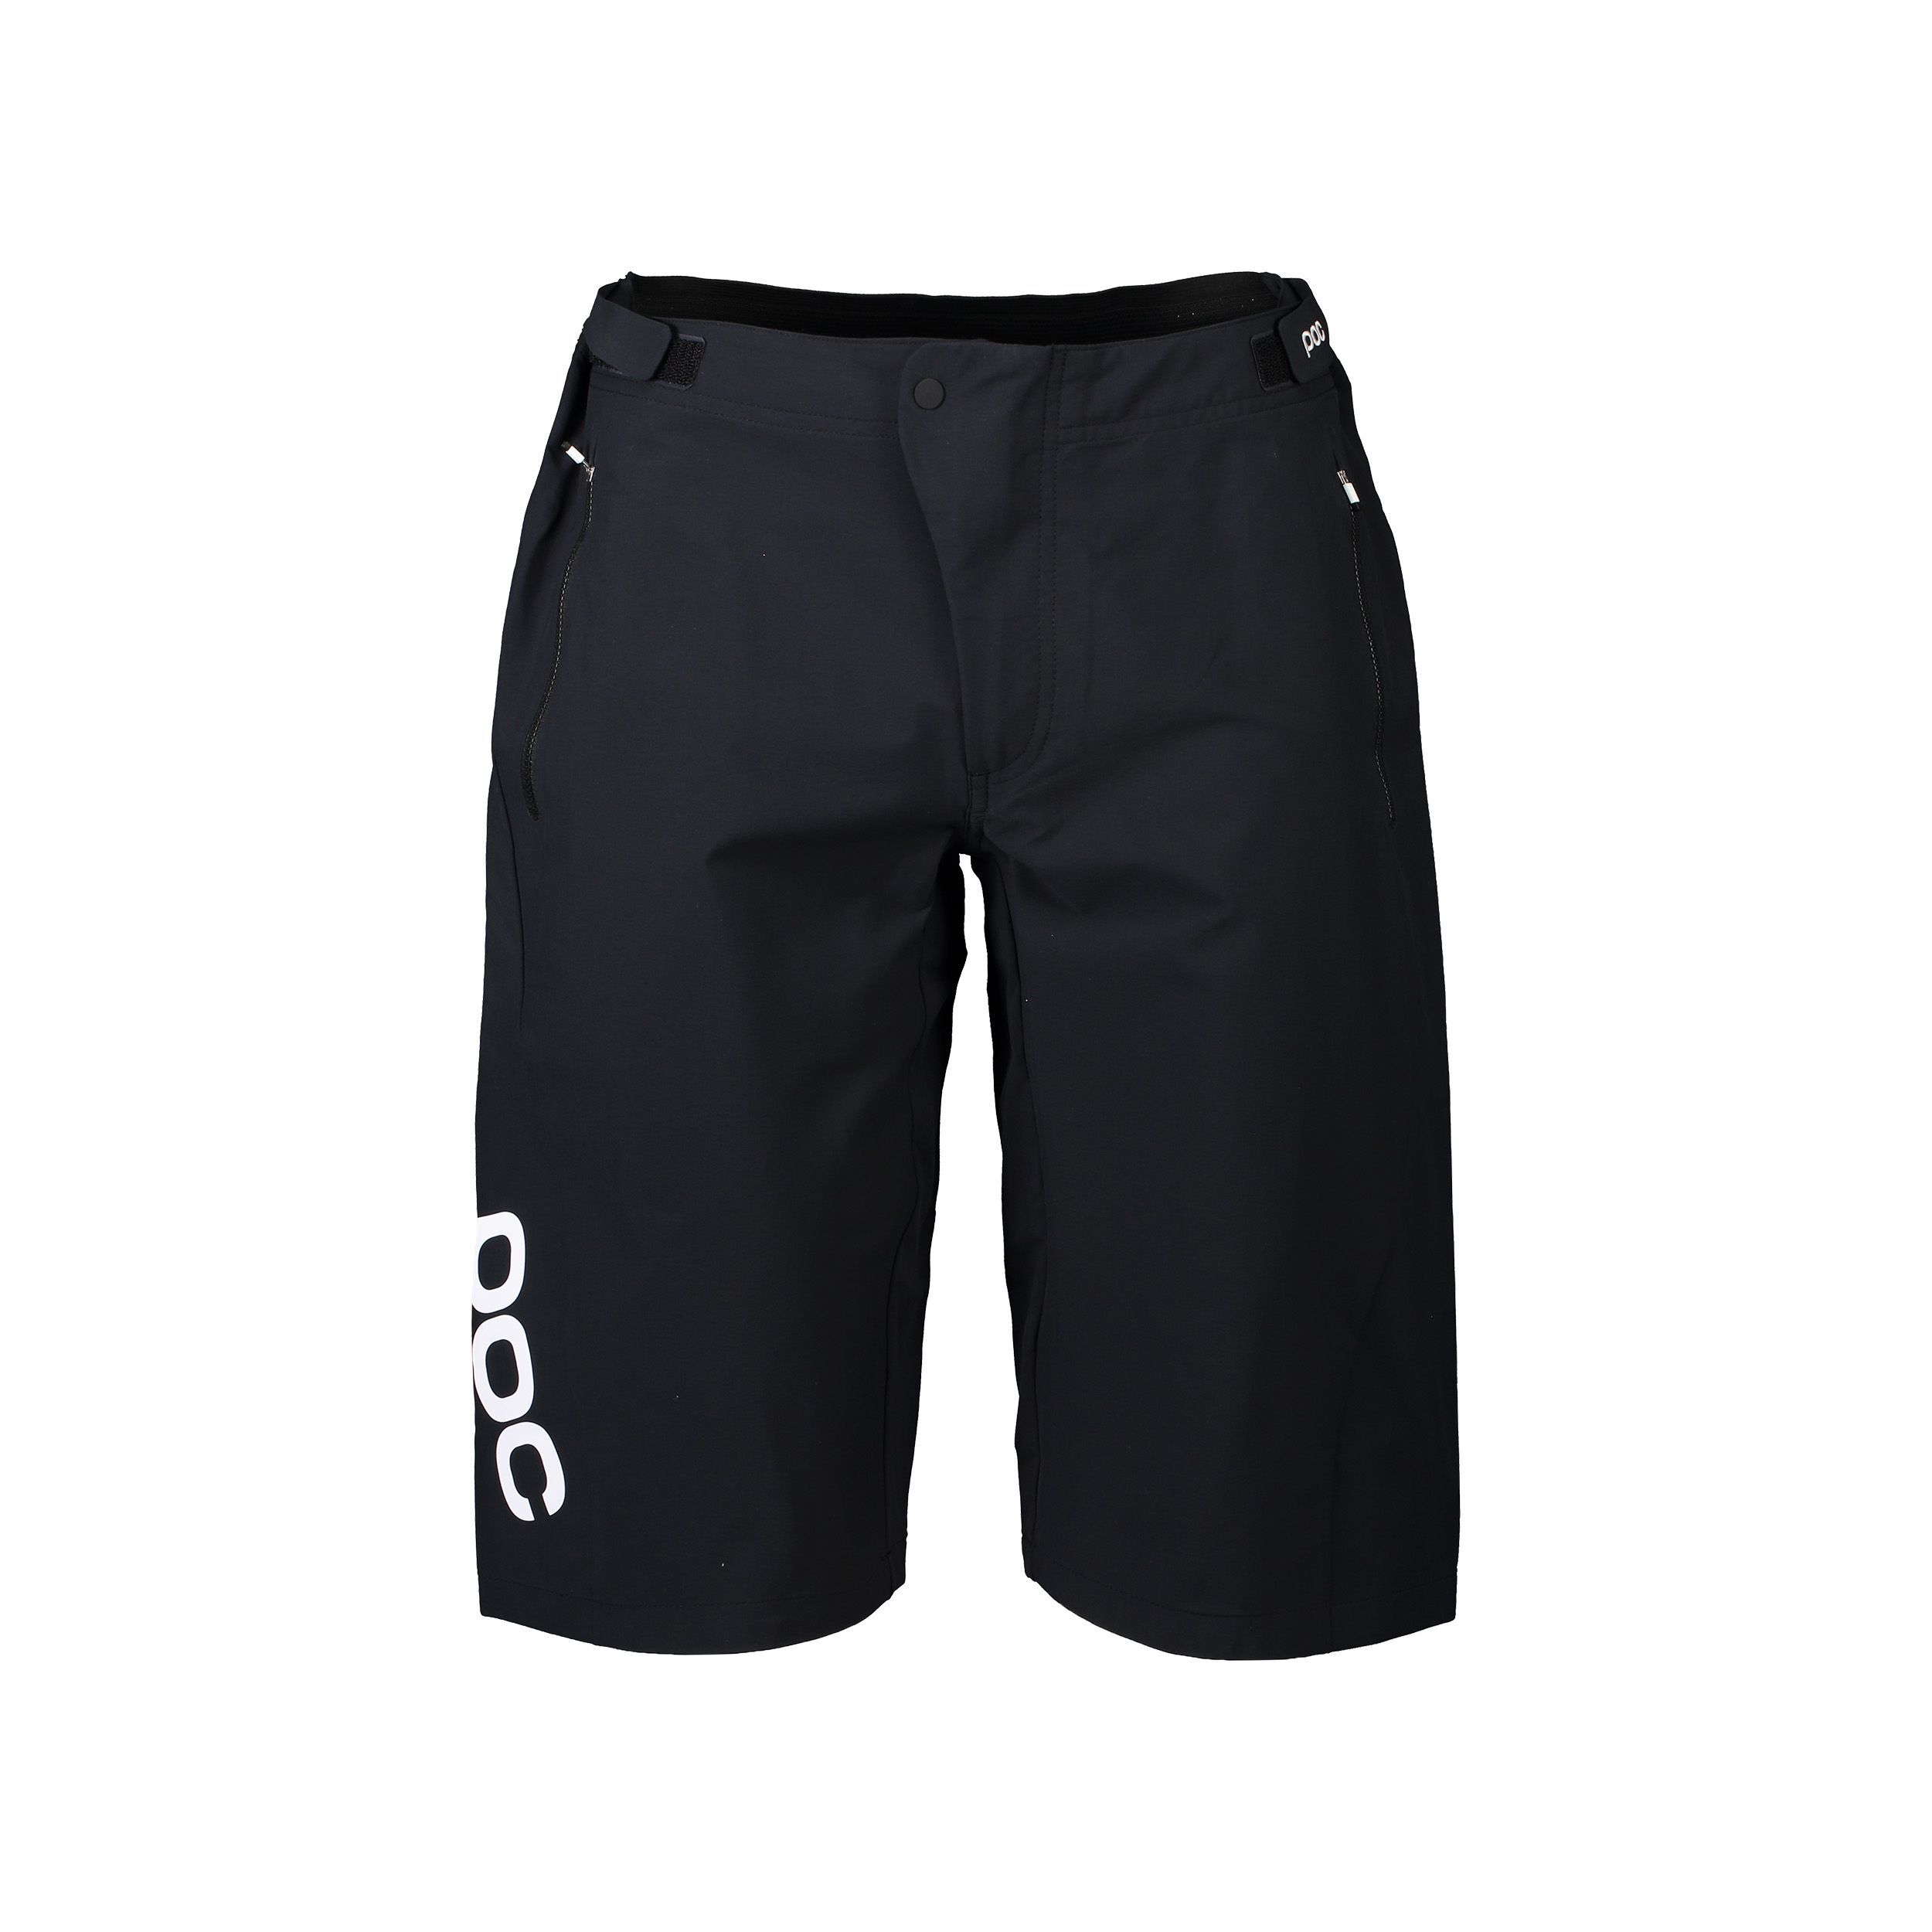 Planta líquido Posicionamiento en buscadores Poc Essential Enduro Shorts - Pantalones cortos MTB - Hombre